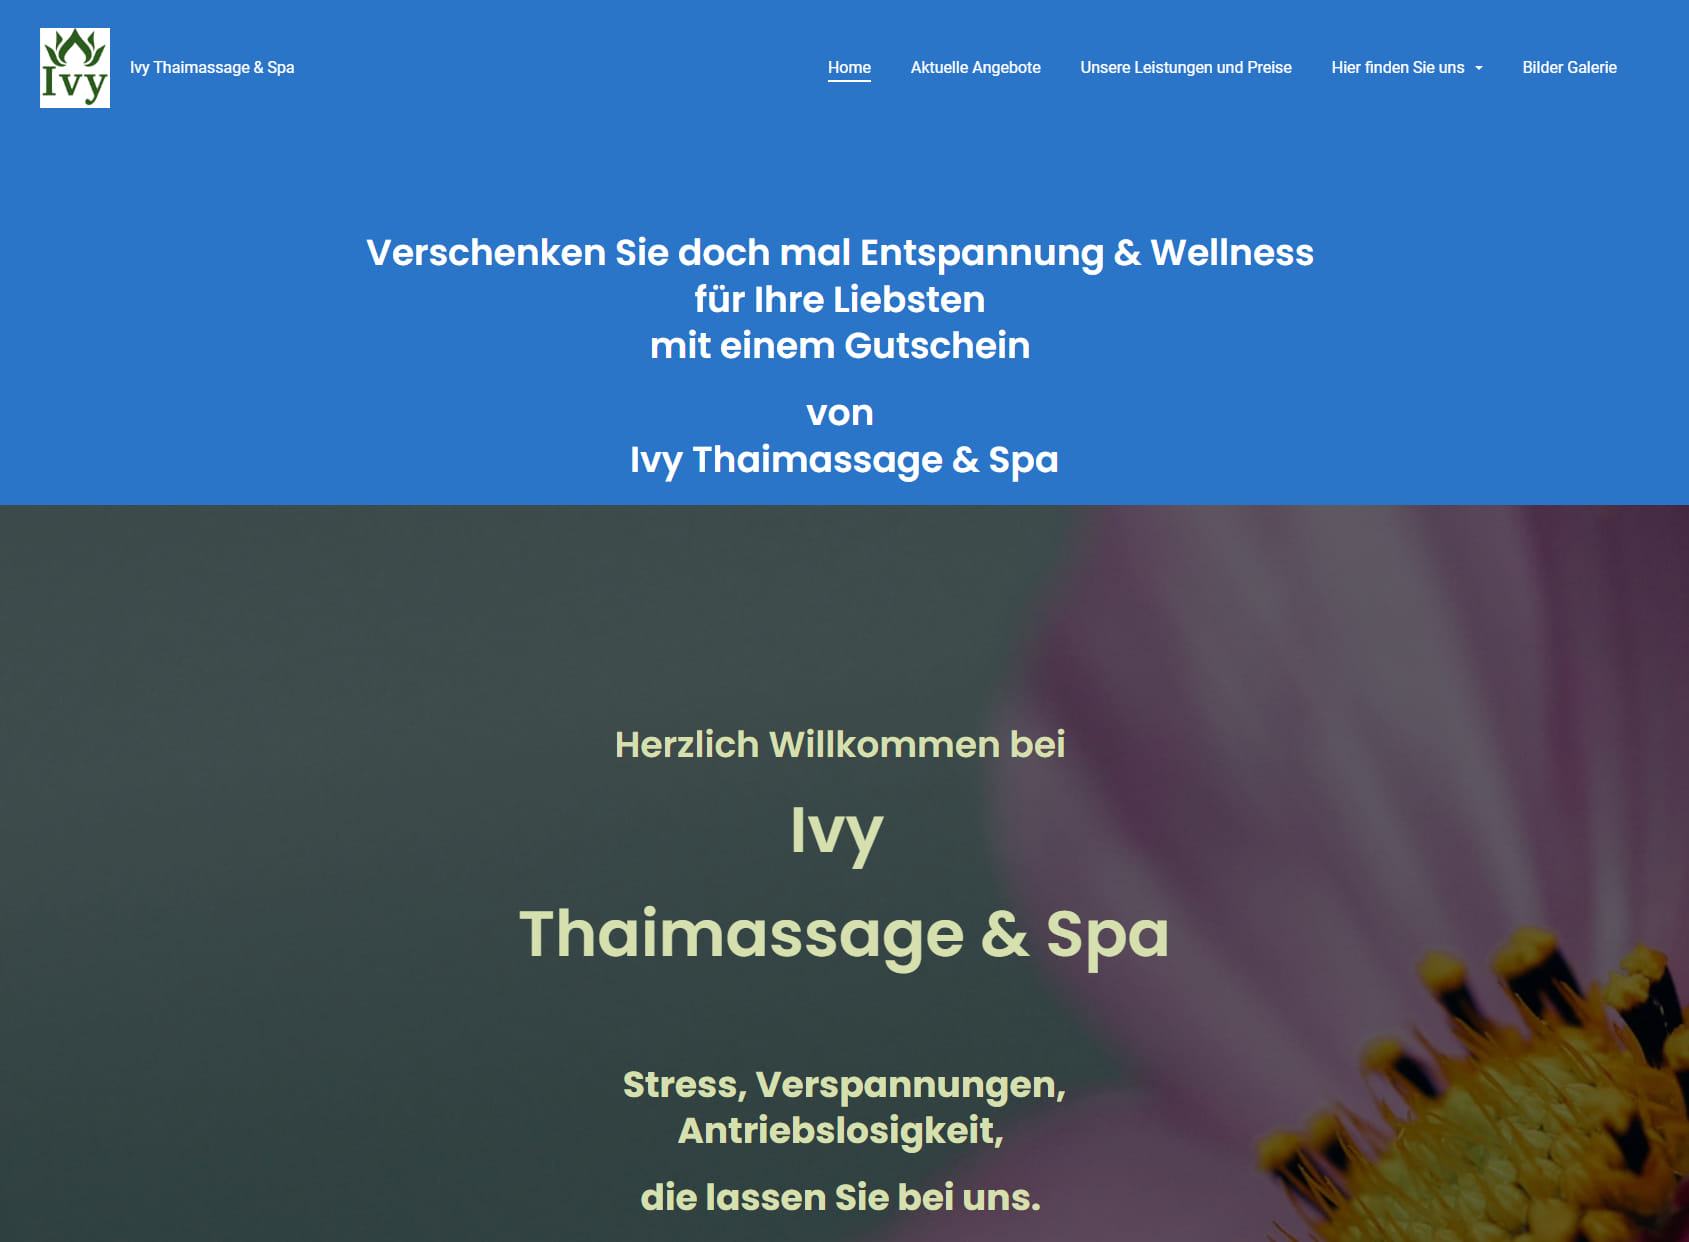 Ivy Thaimassage & Spa